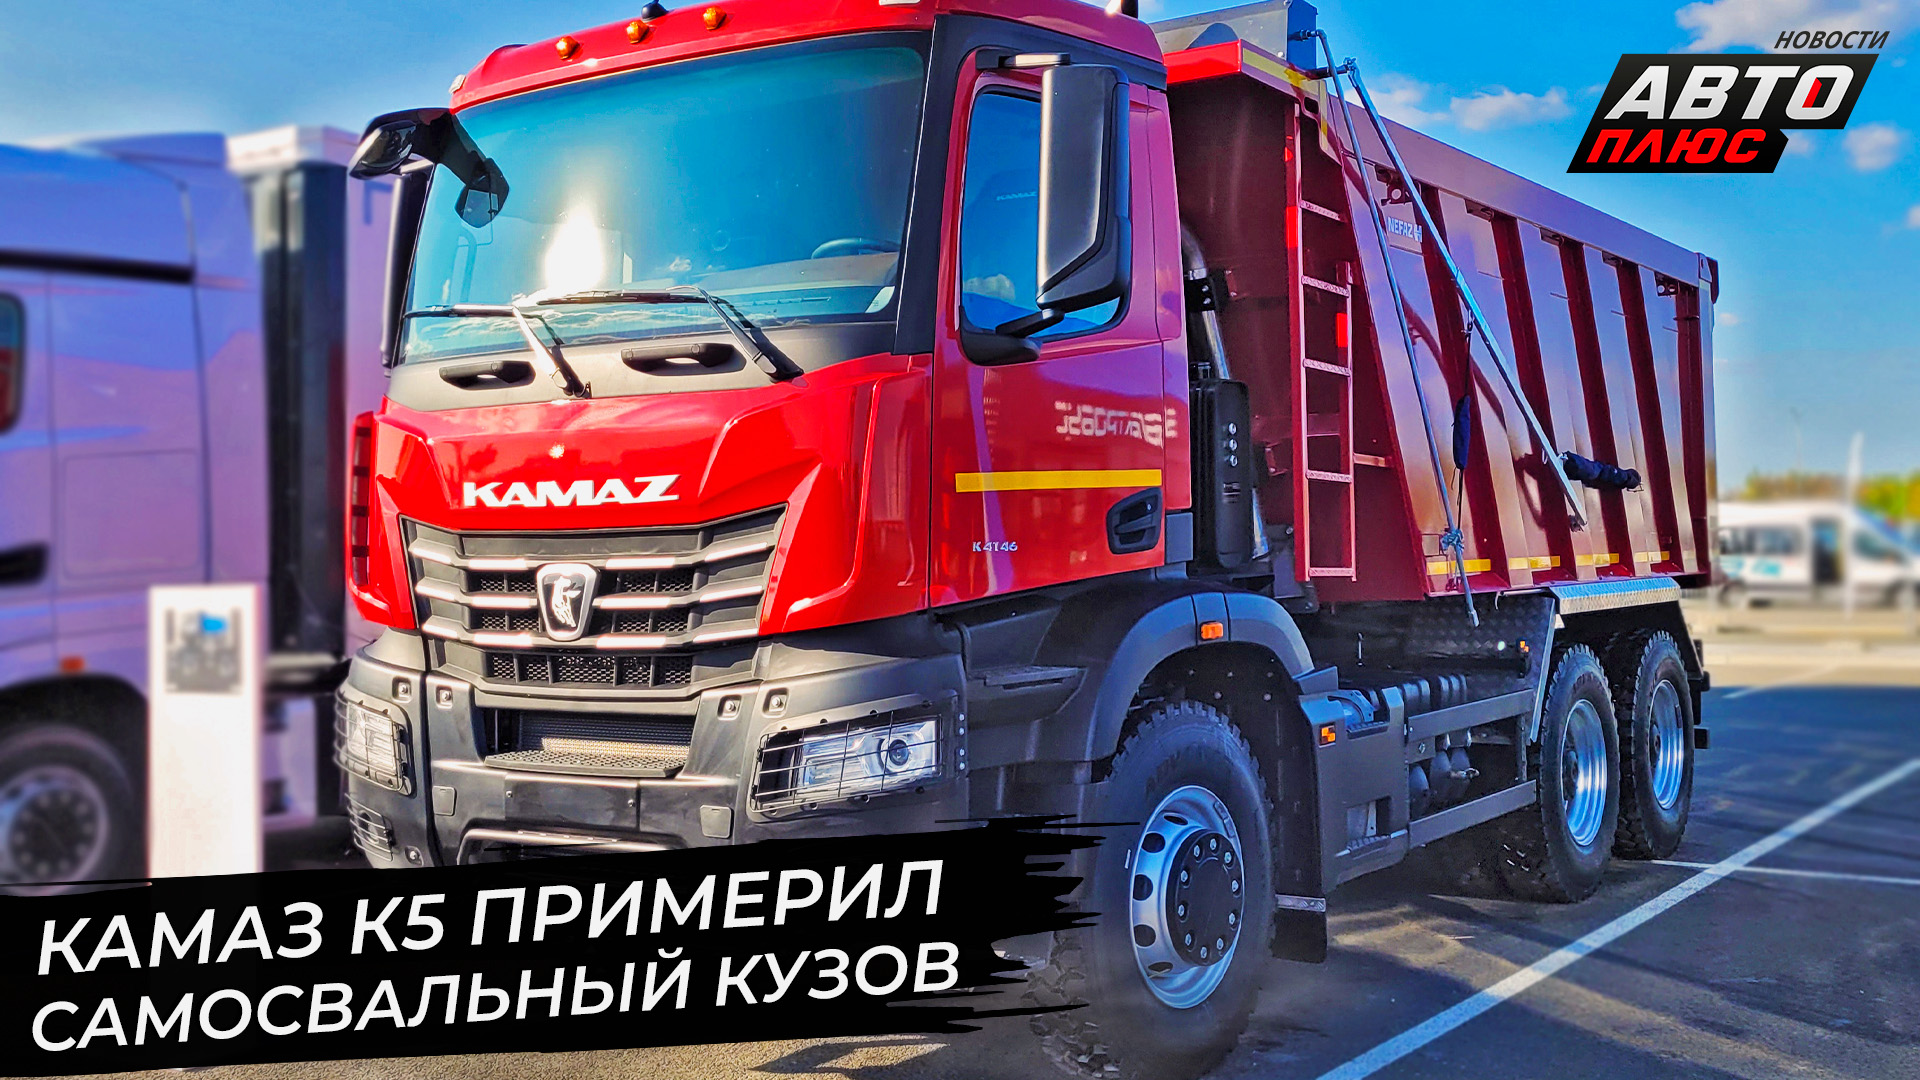 КамАЗ К5 примерил самосвальный кузов. КамАЗ доукомплектует 23000 грузовиков 